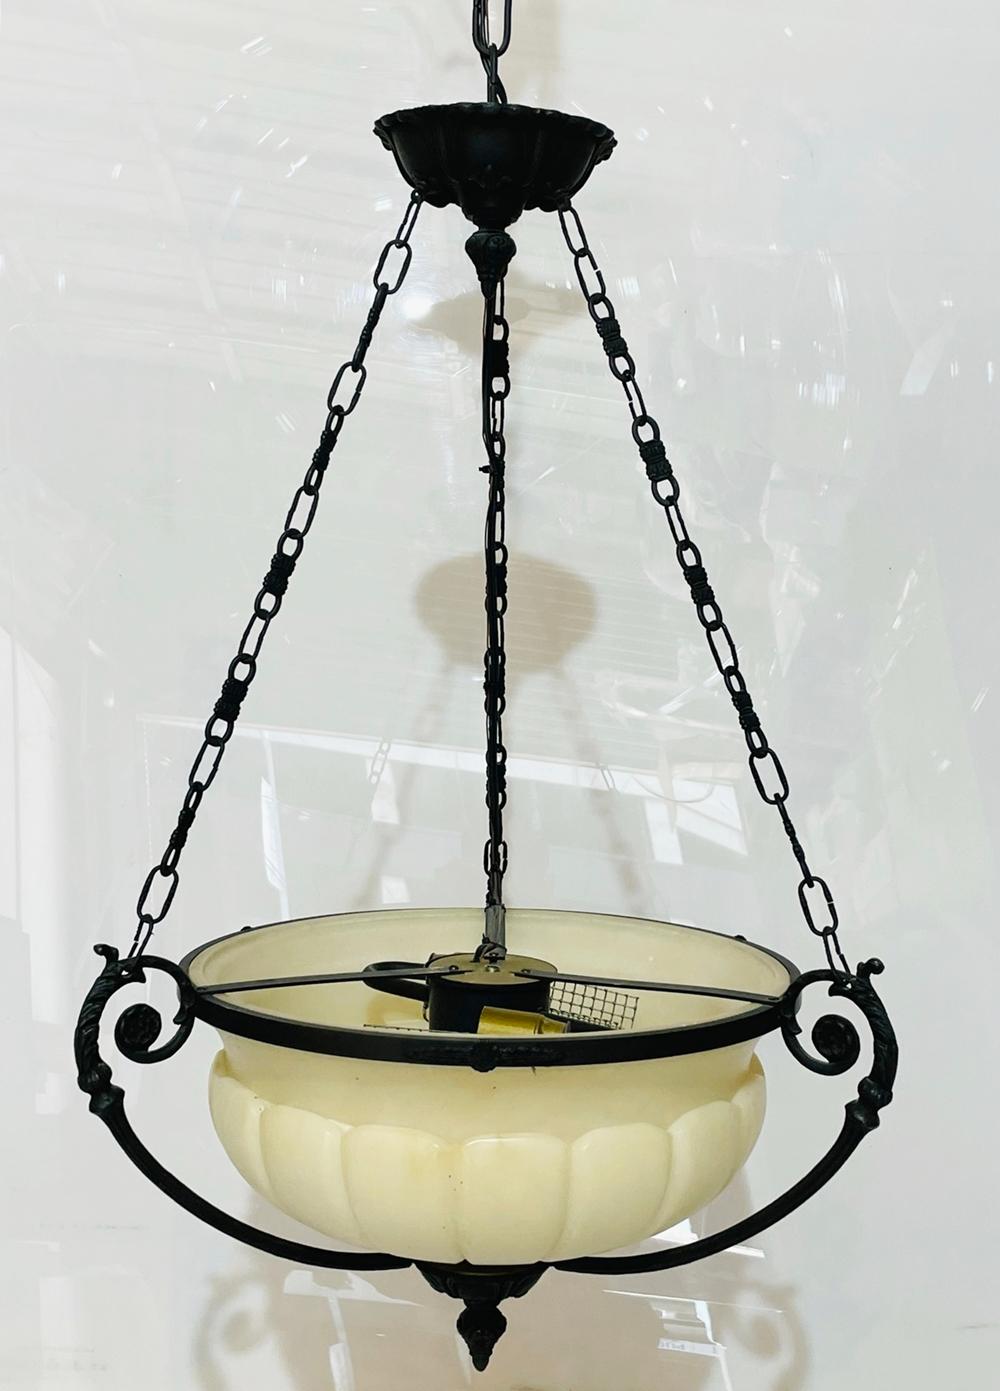 spanish alabaster chandelier